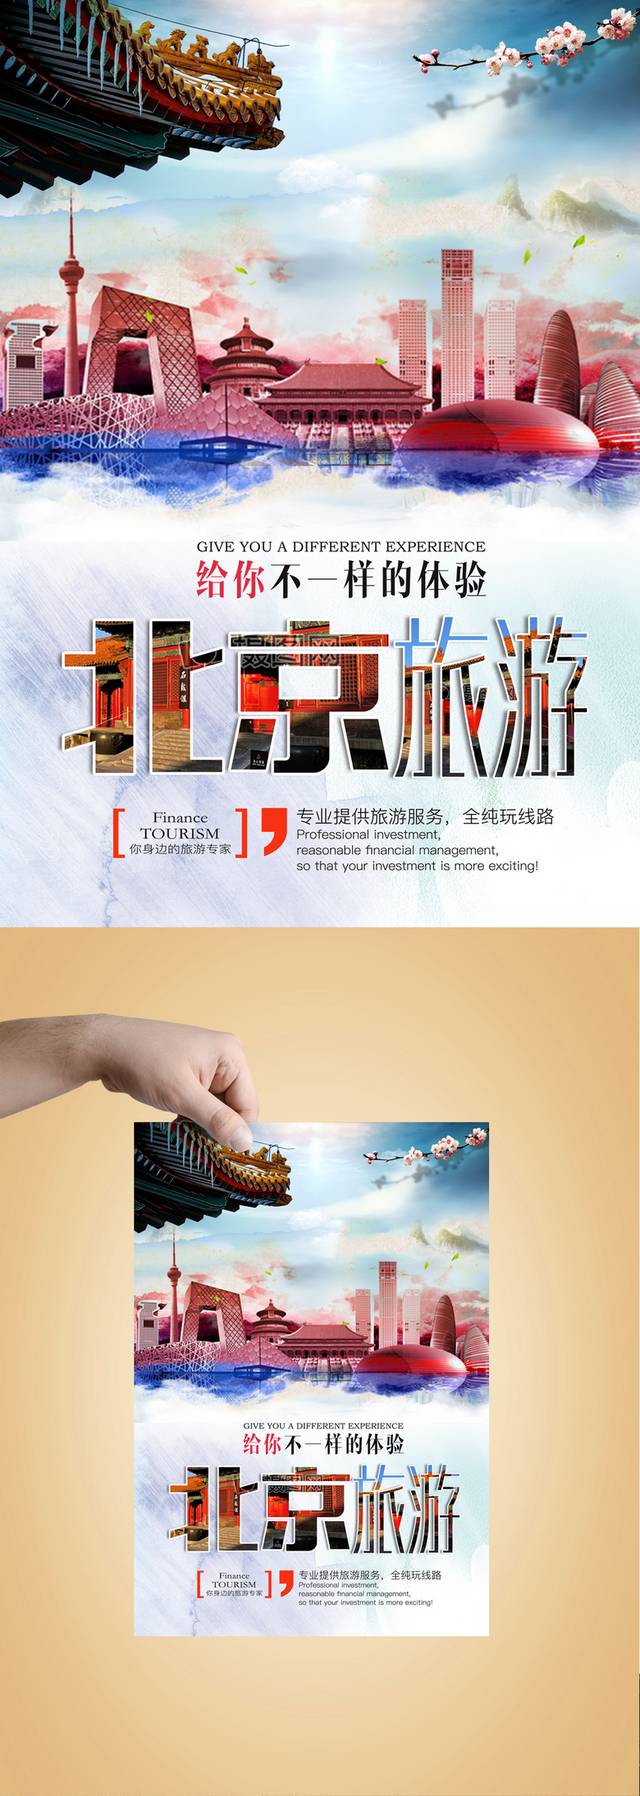 北京之旅海报设计